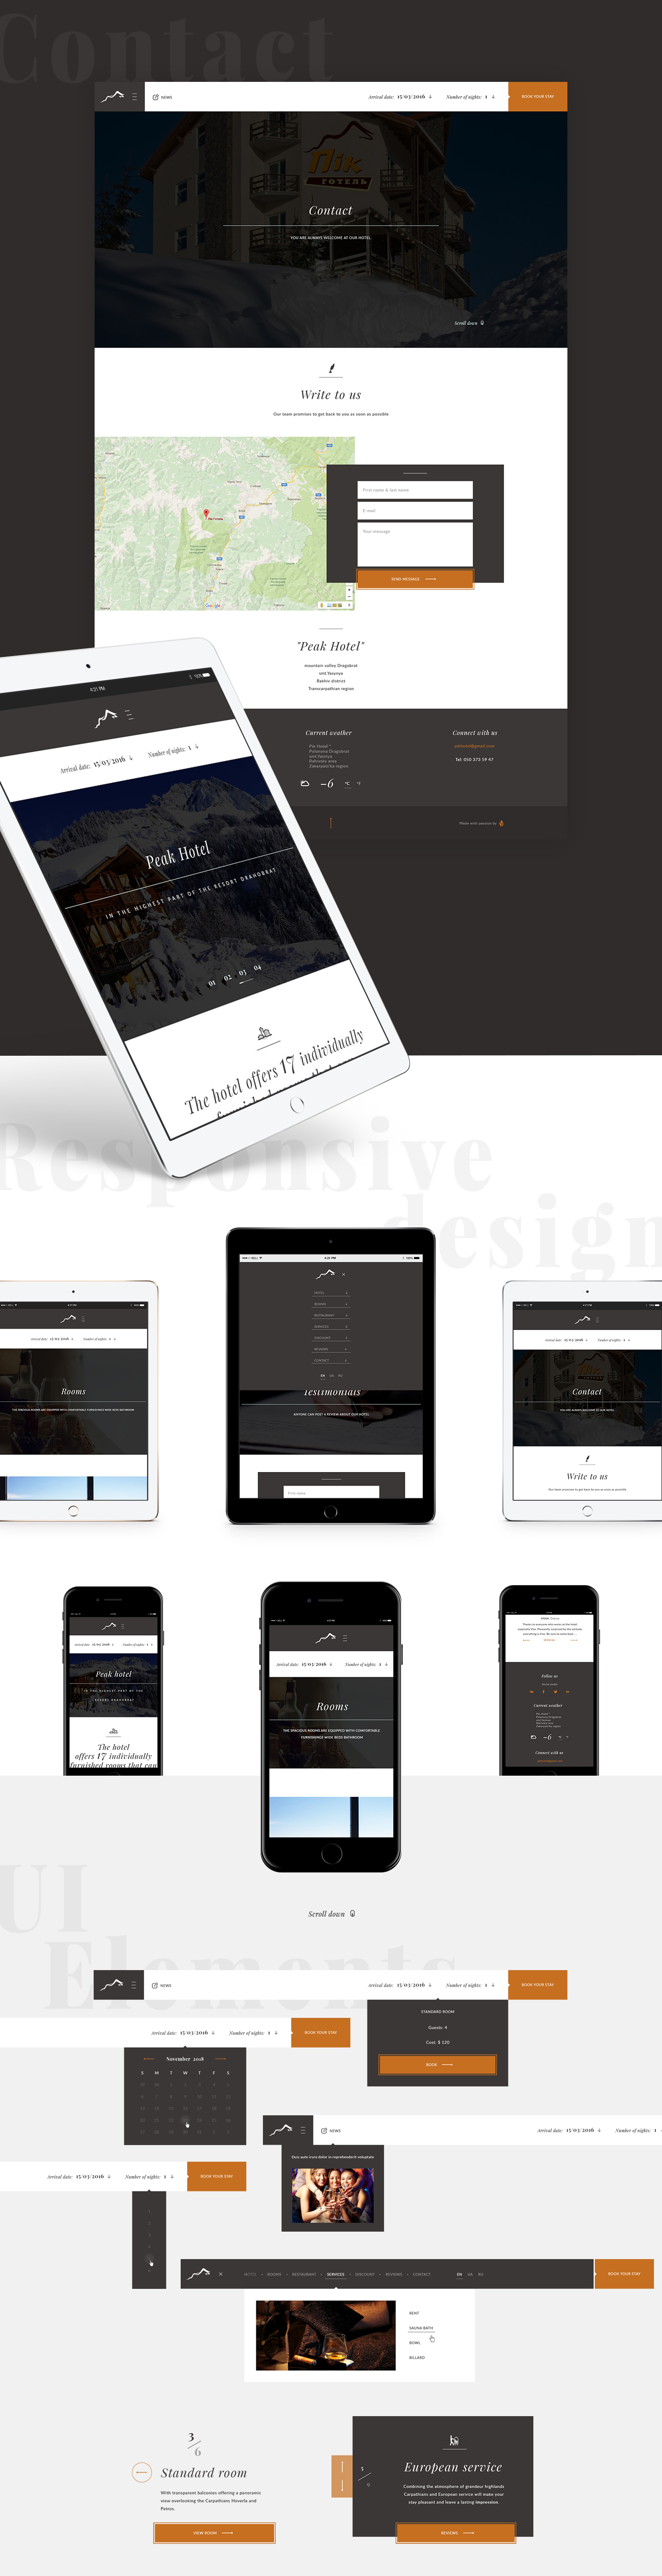 UI/UX hotel Web Design  Interaction design  Website peak